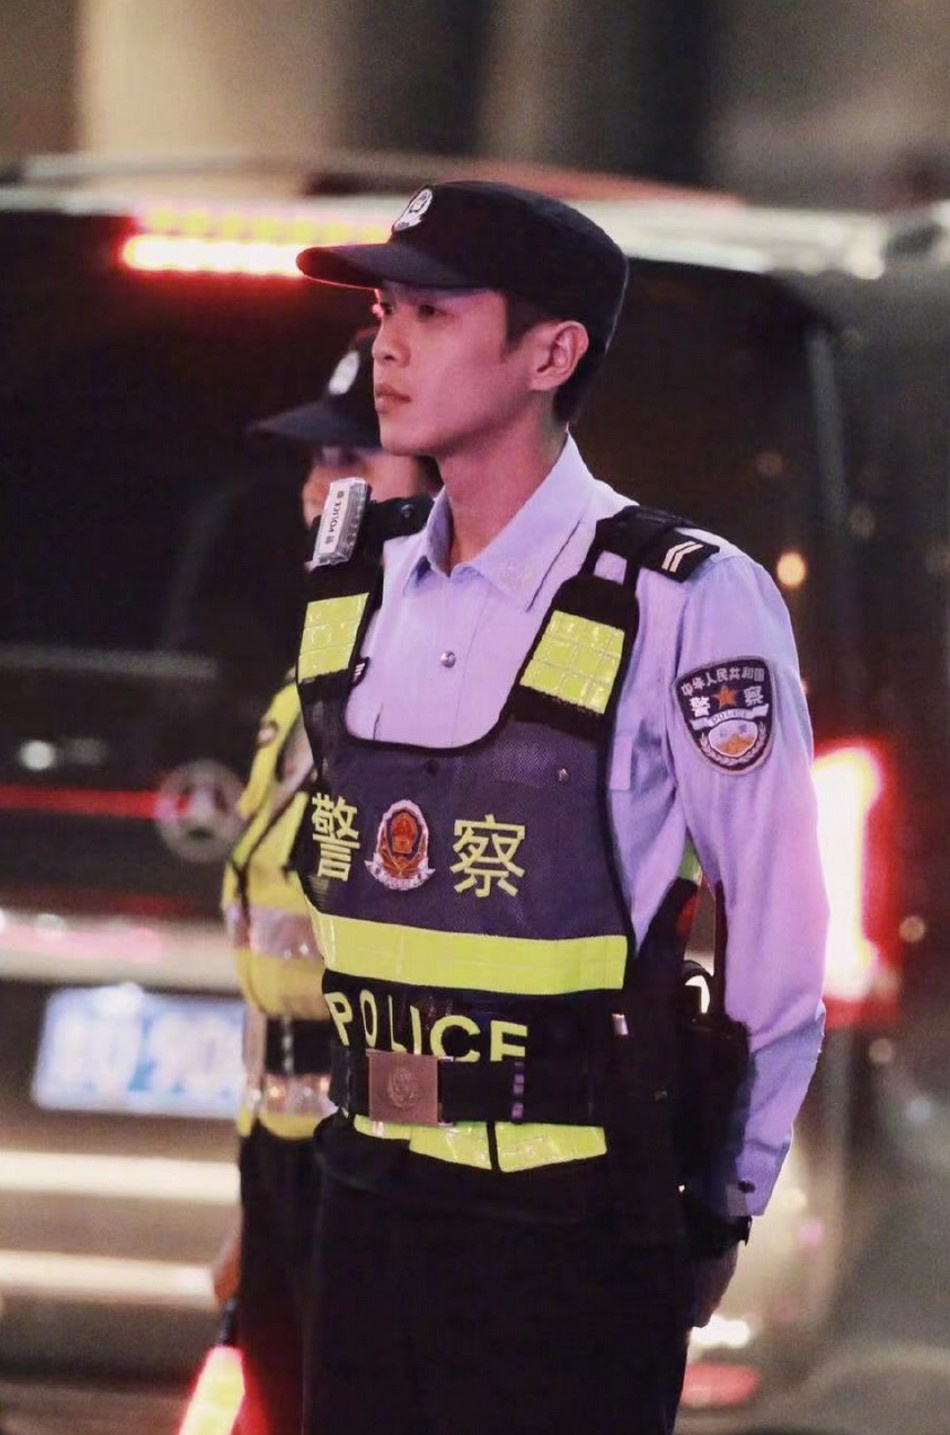 中国警察张若昀图片